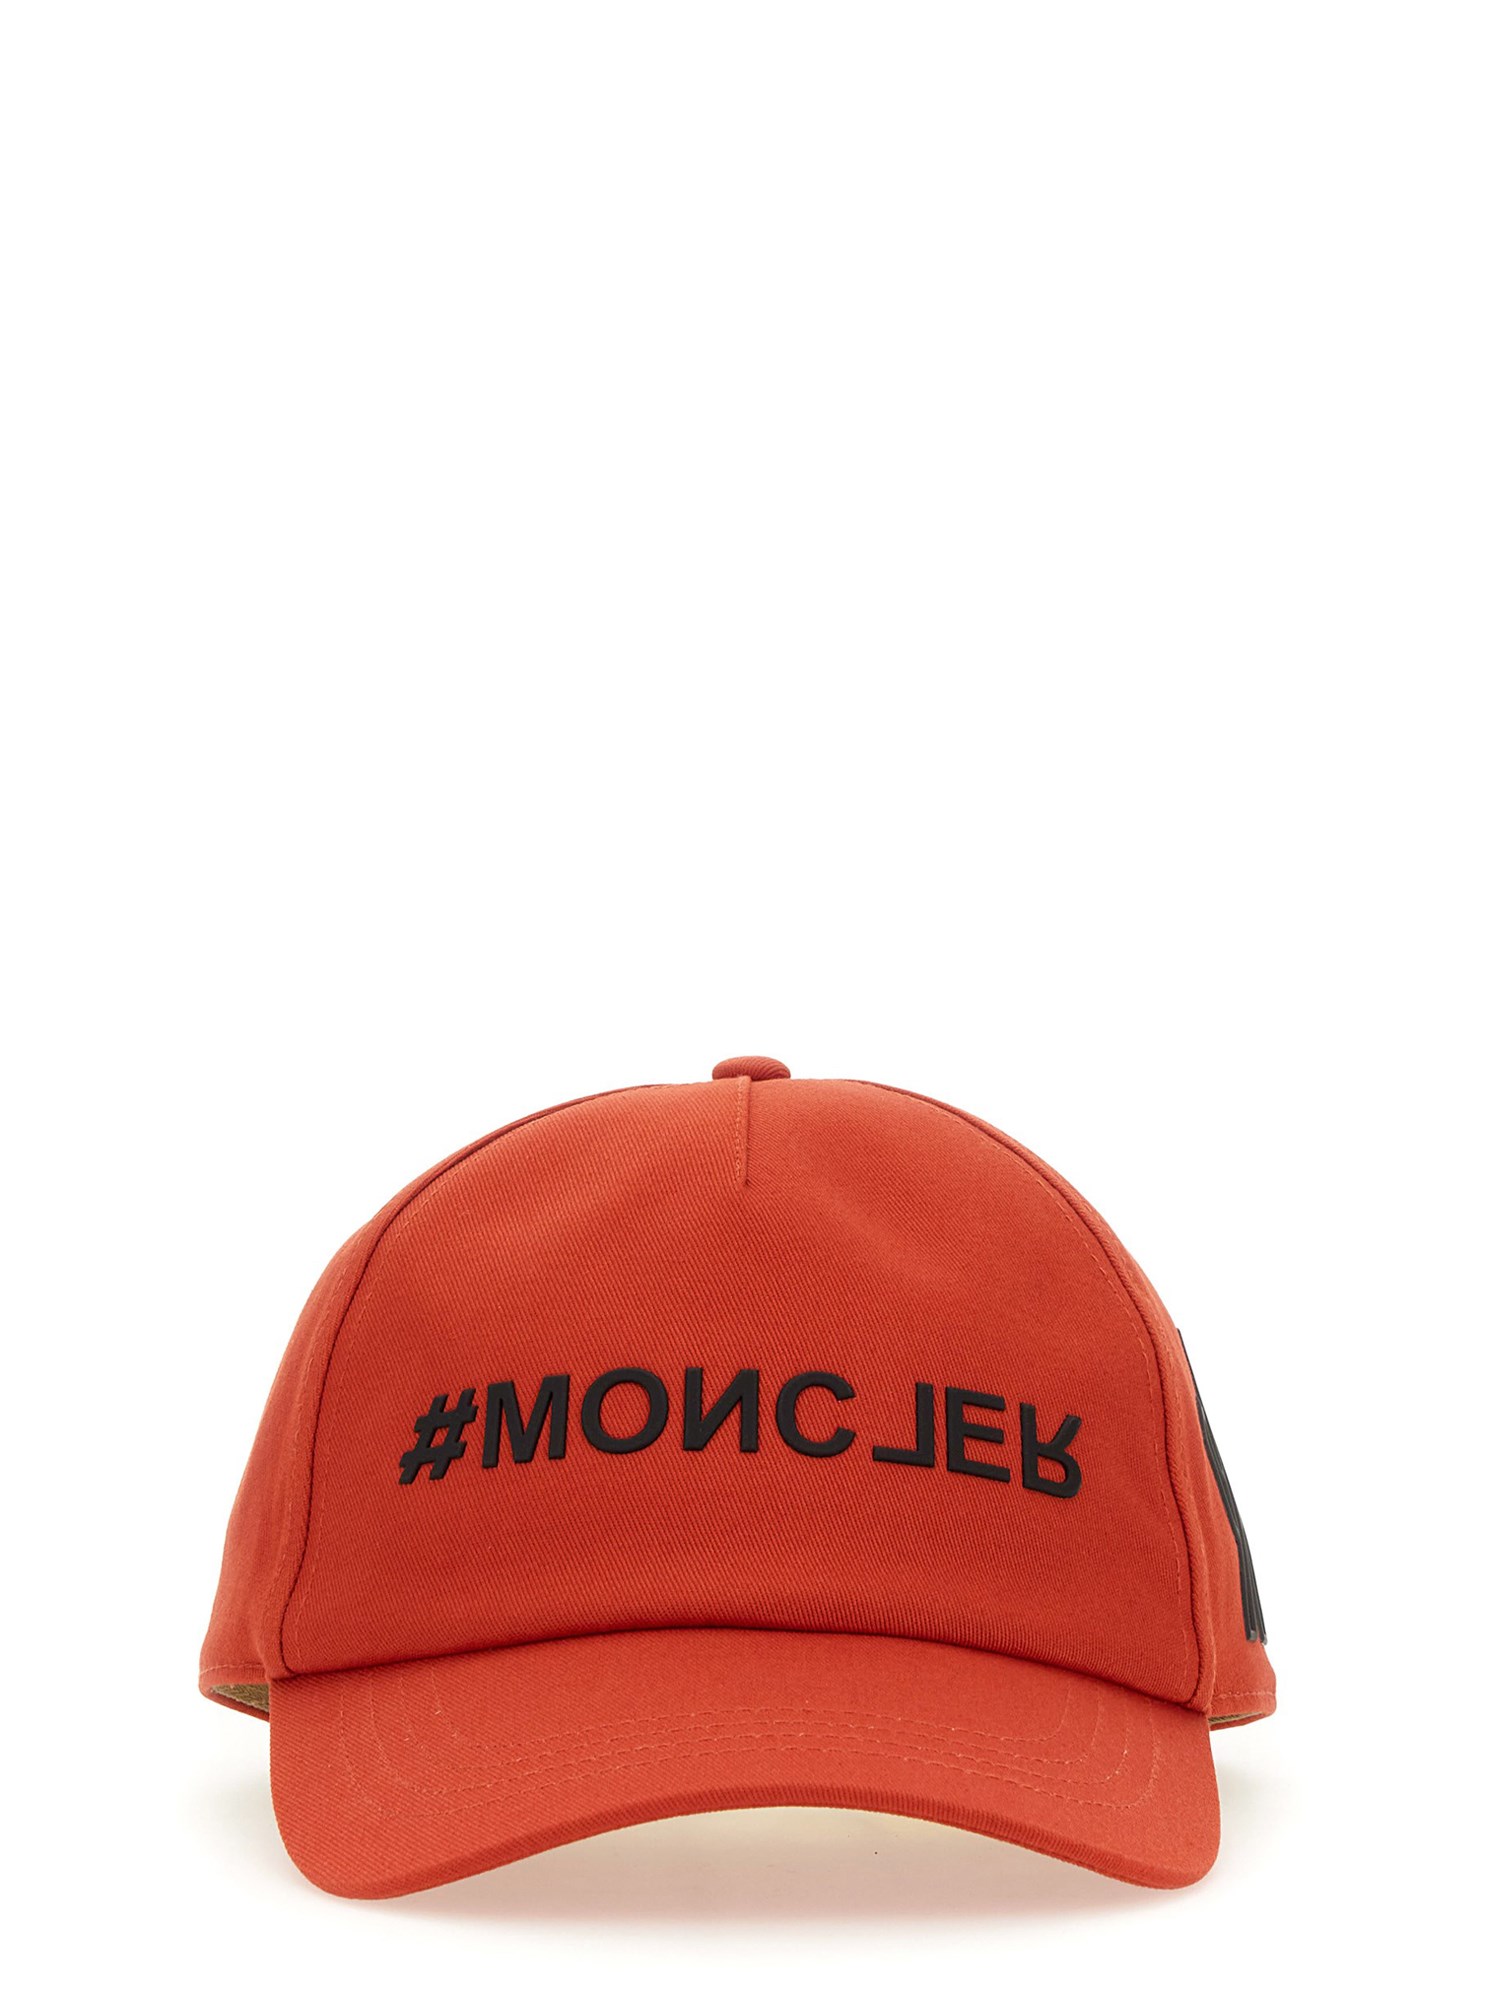 Moncler Grenoble moncler grenoble baseball cap